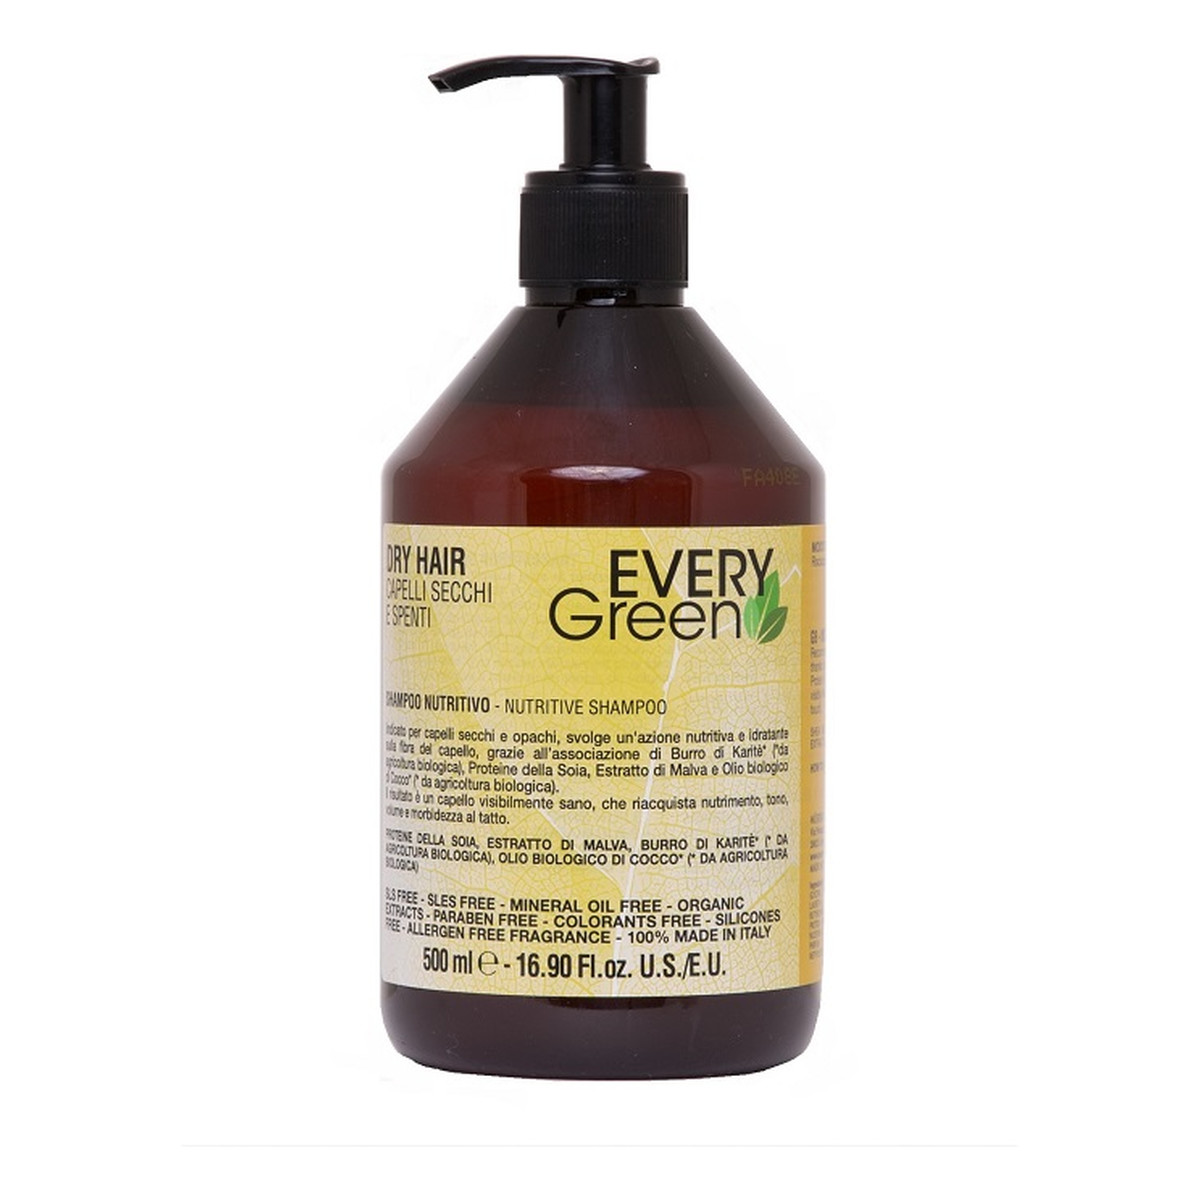 Every Green Dry Hair Nutritive Shampoo szampon odżywczy włosy suche i matowe 500ml